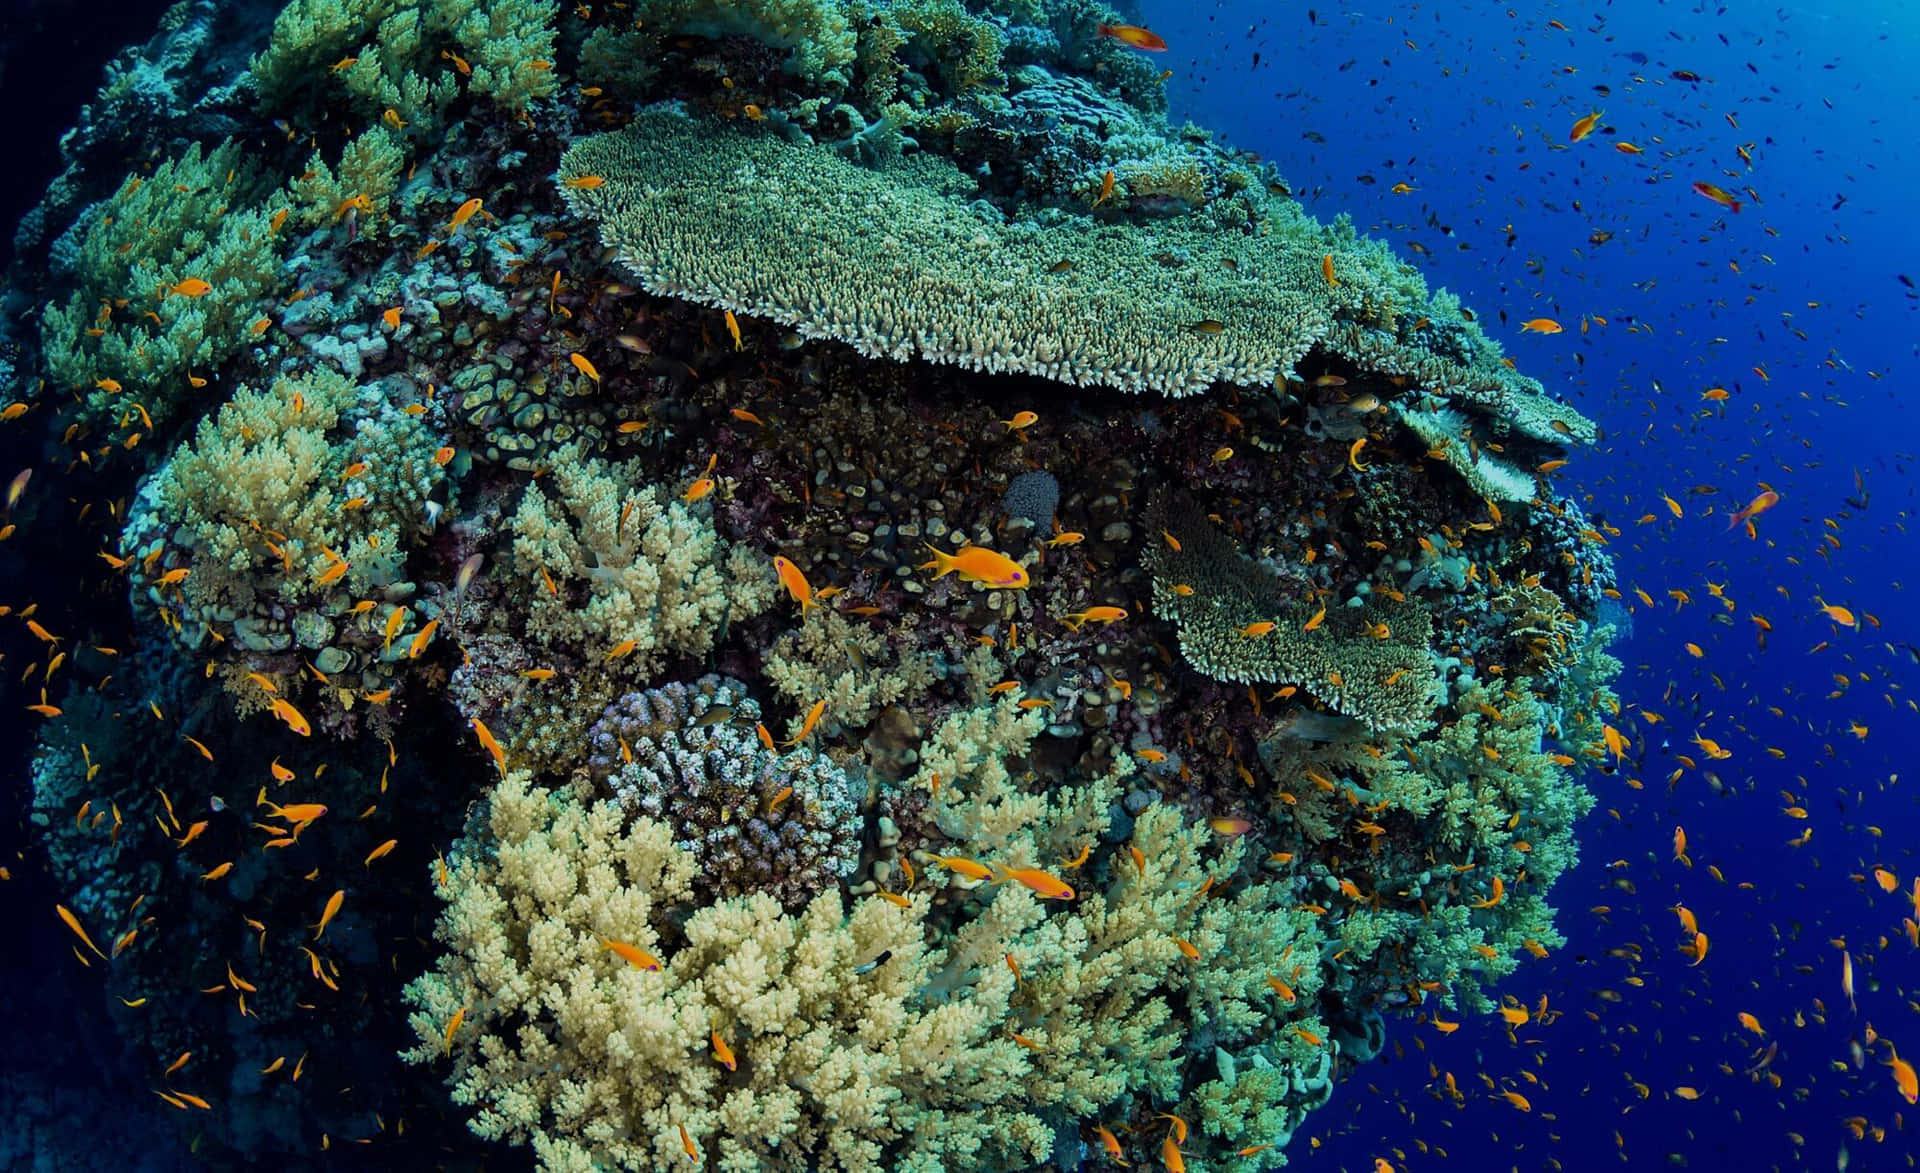 Imagende Un Arrecife De Coral Con Pequeños Peces Naranjas En El Océano.